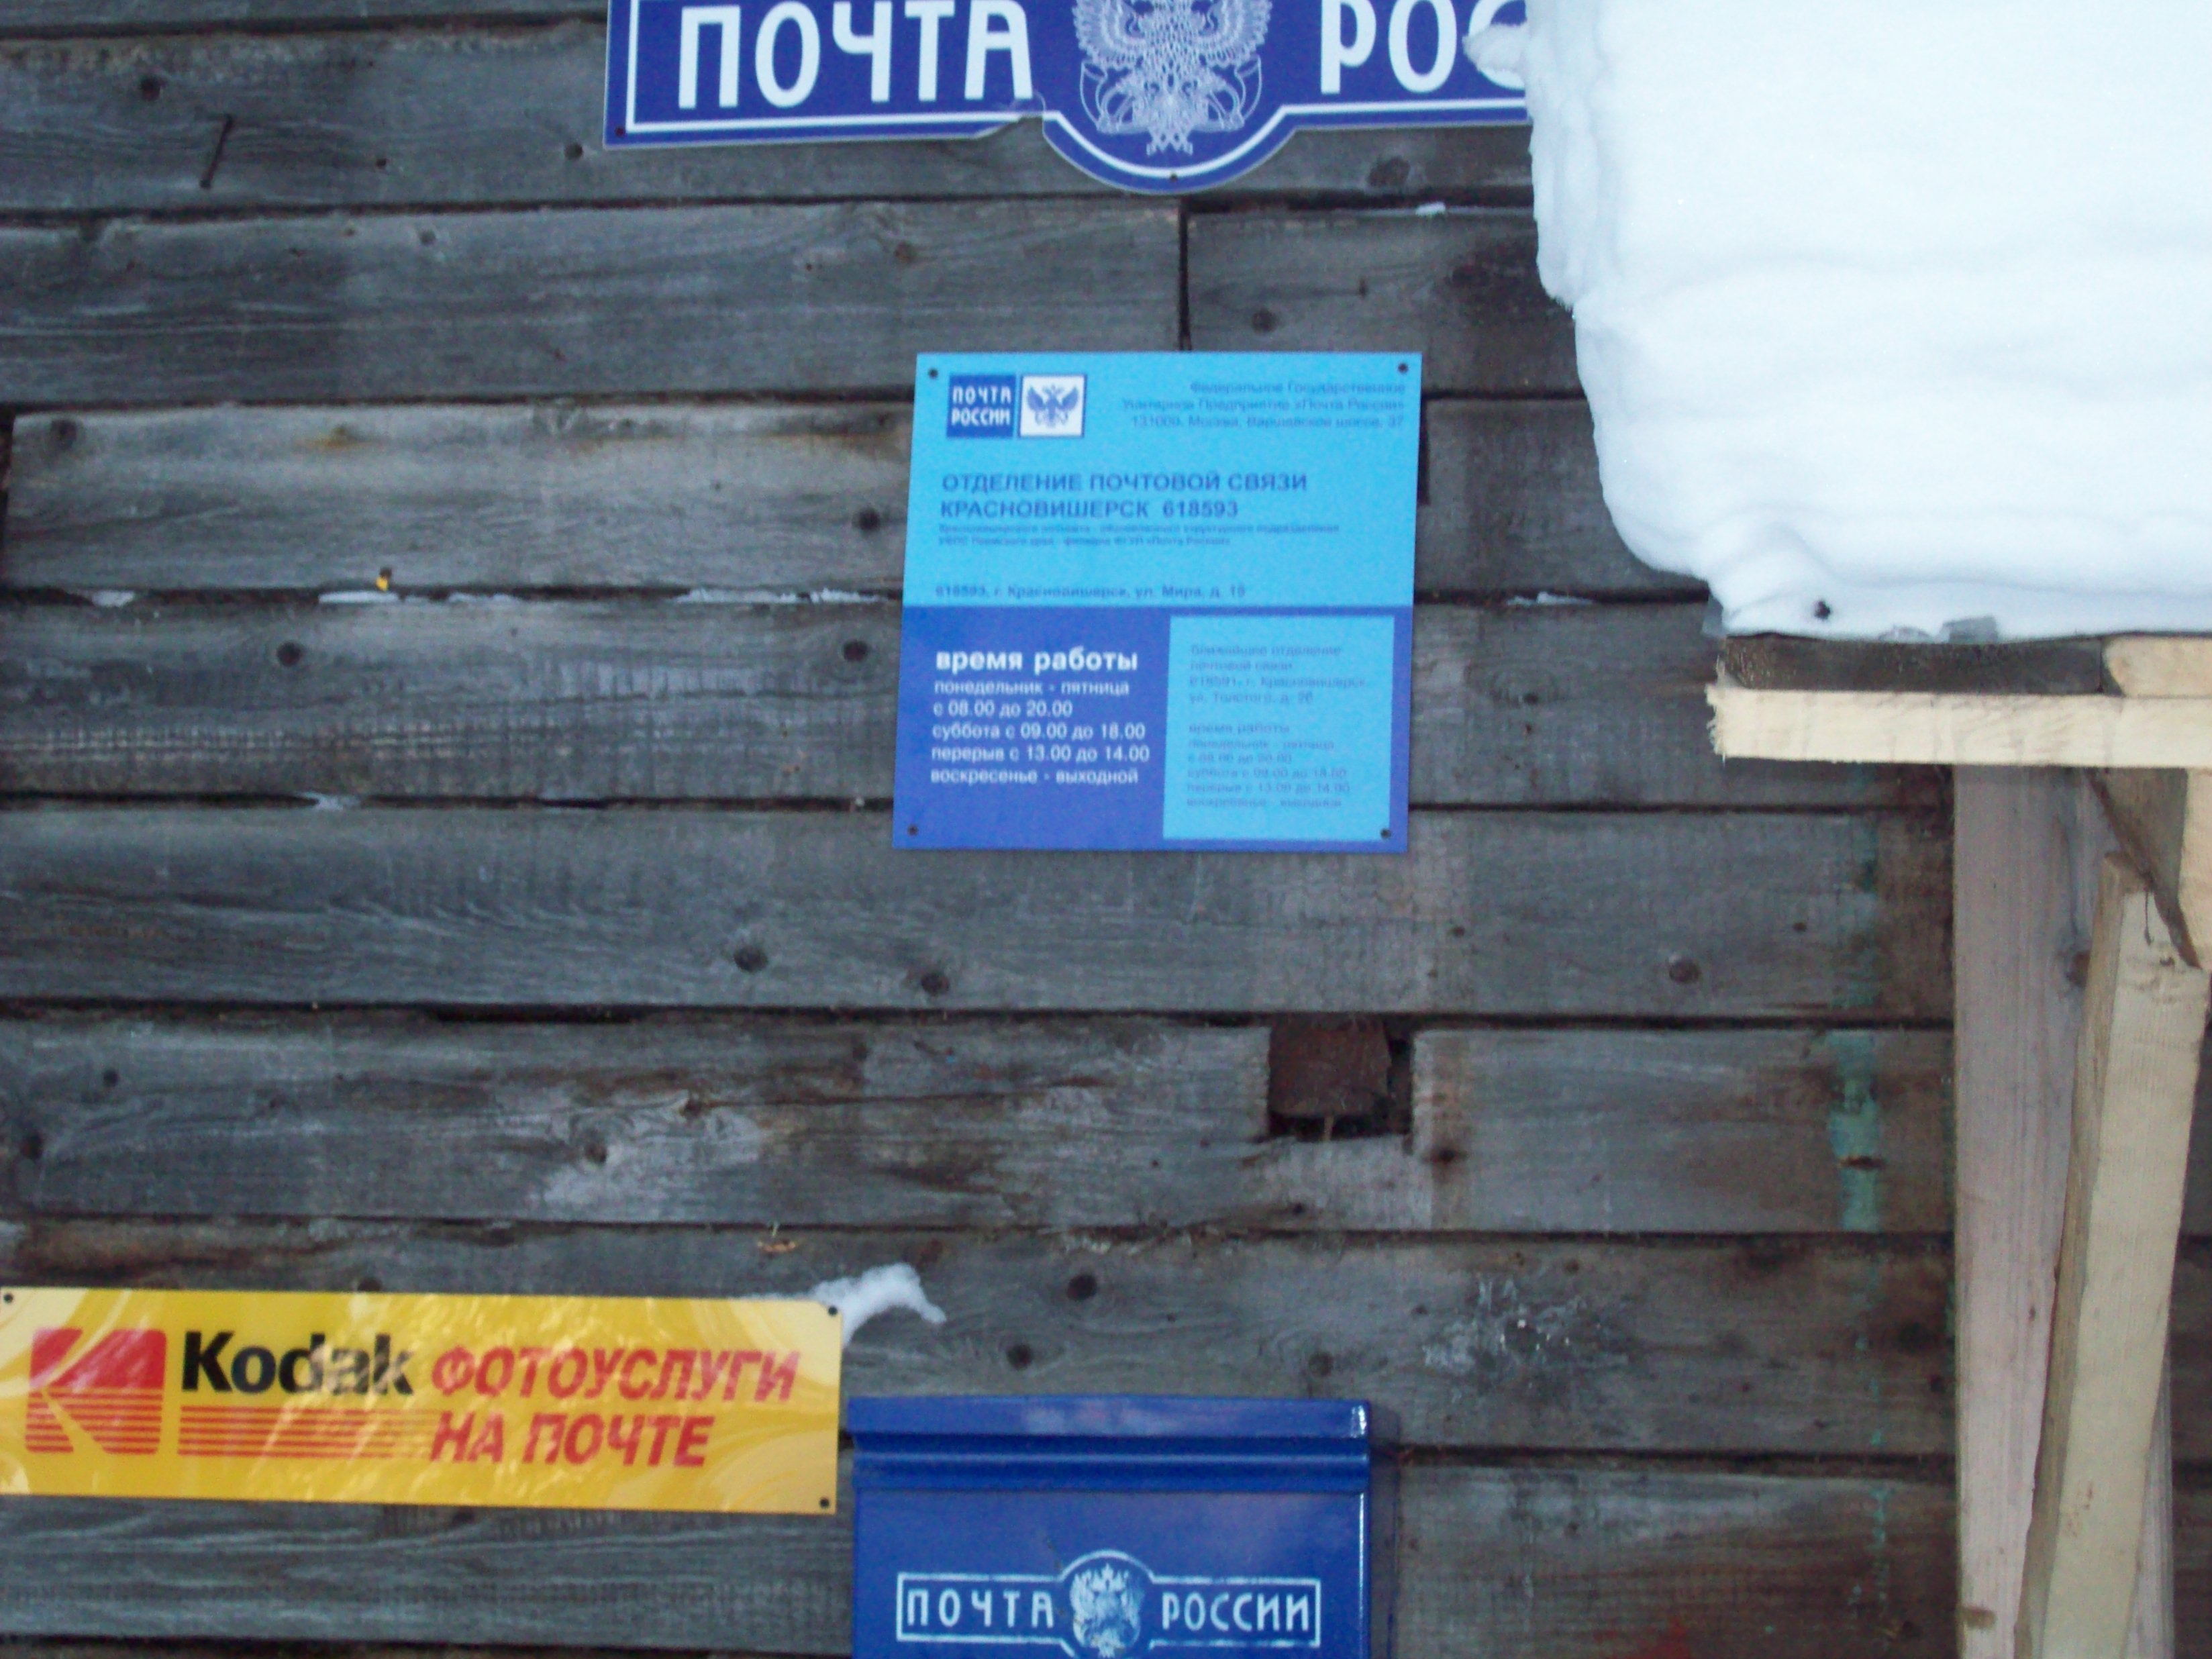 ФАСАД, отделение почтовой связи 618593, Пермский край, Красновишерский р-он